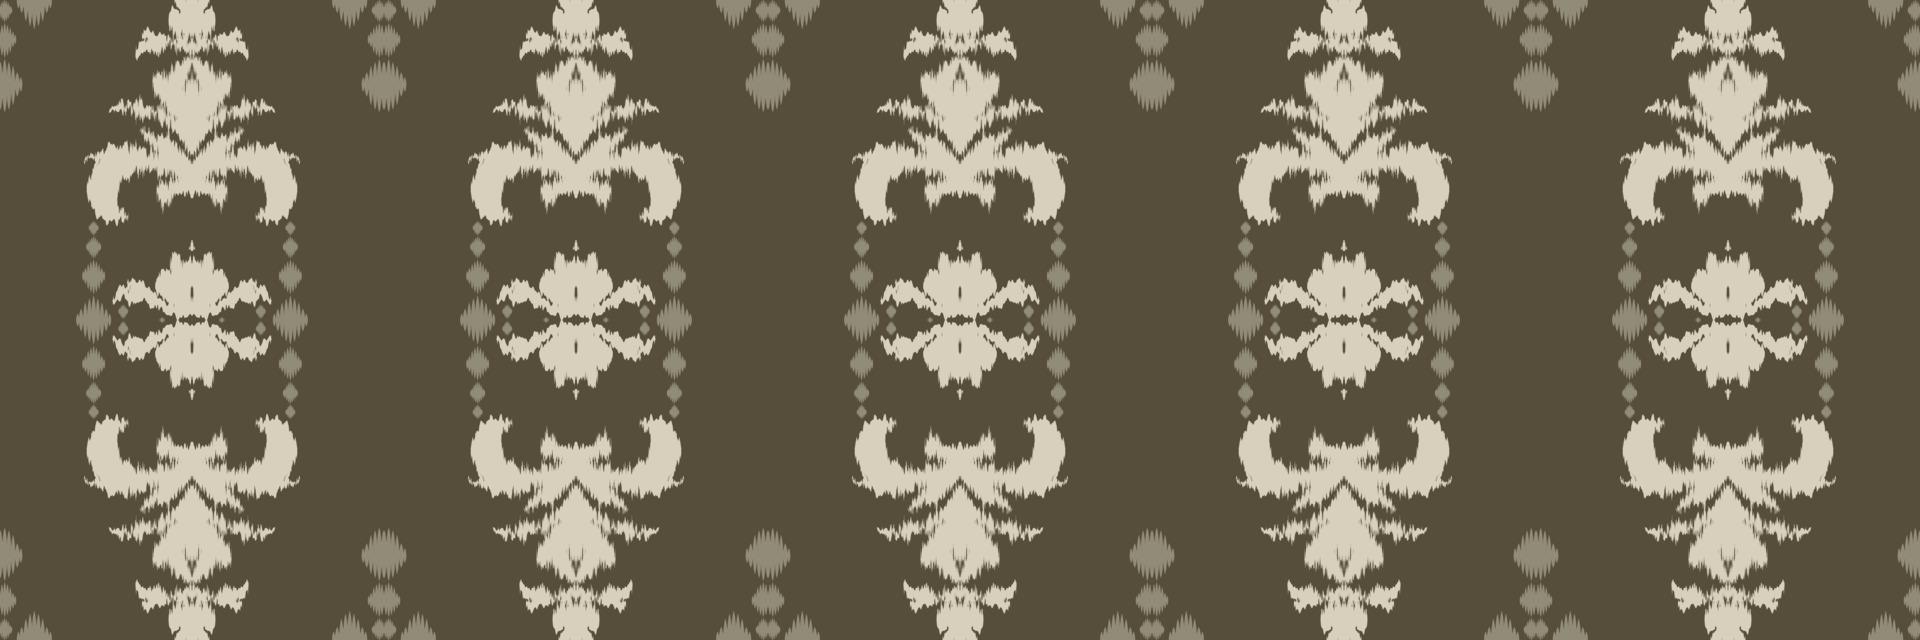 Ikkat ou Ikat fleur batik textile modèle sans couture conception de vecteur numérique pour impression saree kurti borneo tissu frontière brosse symboles échantillons coton